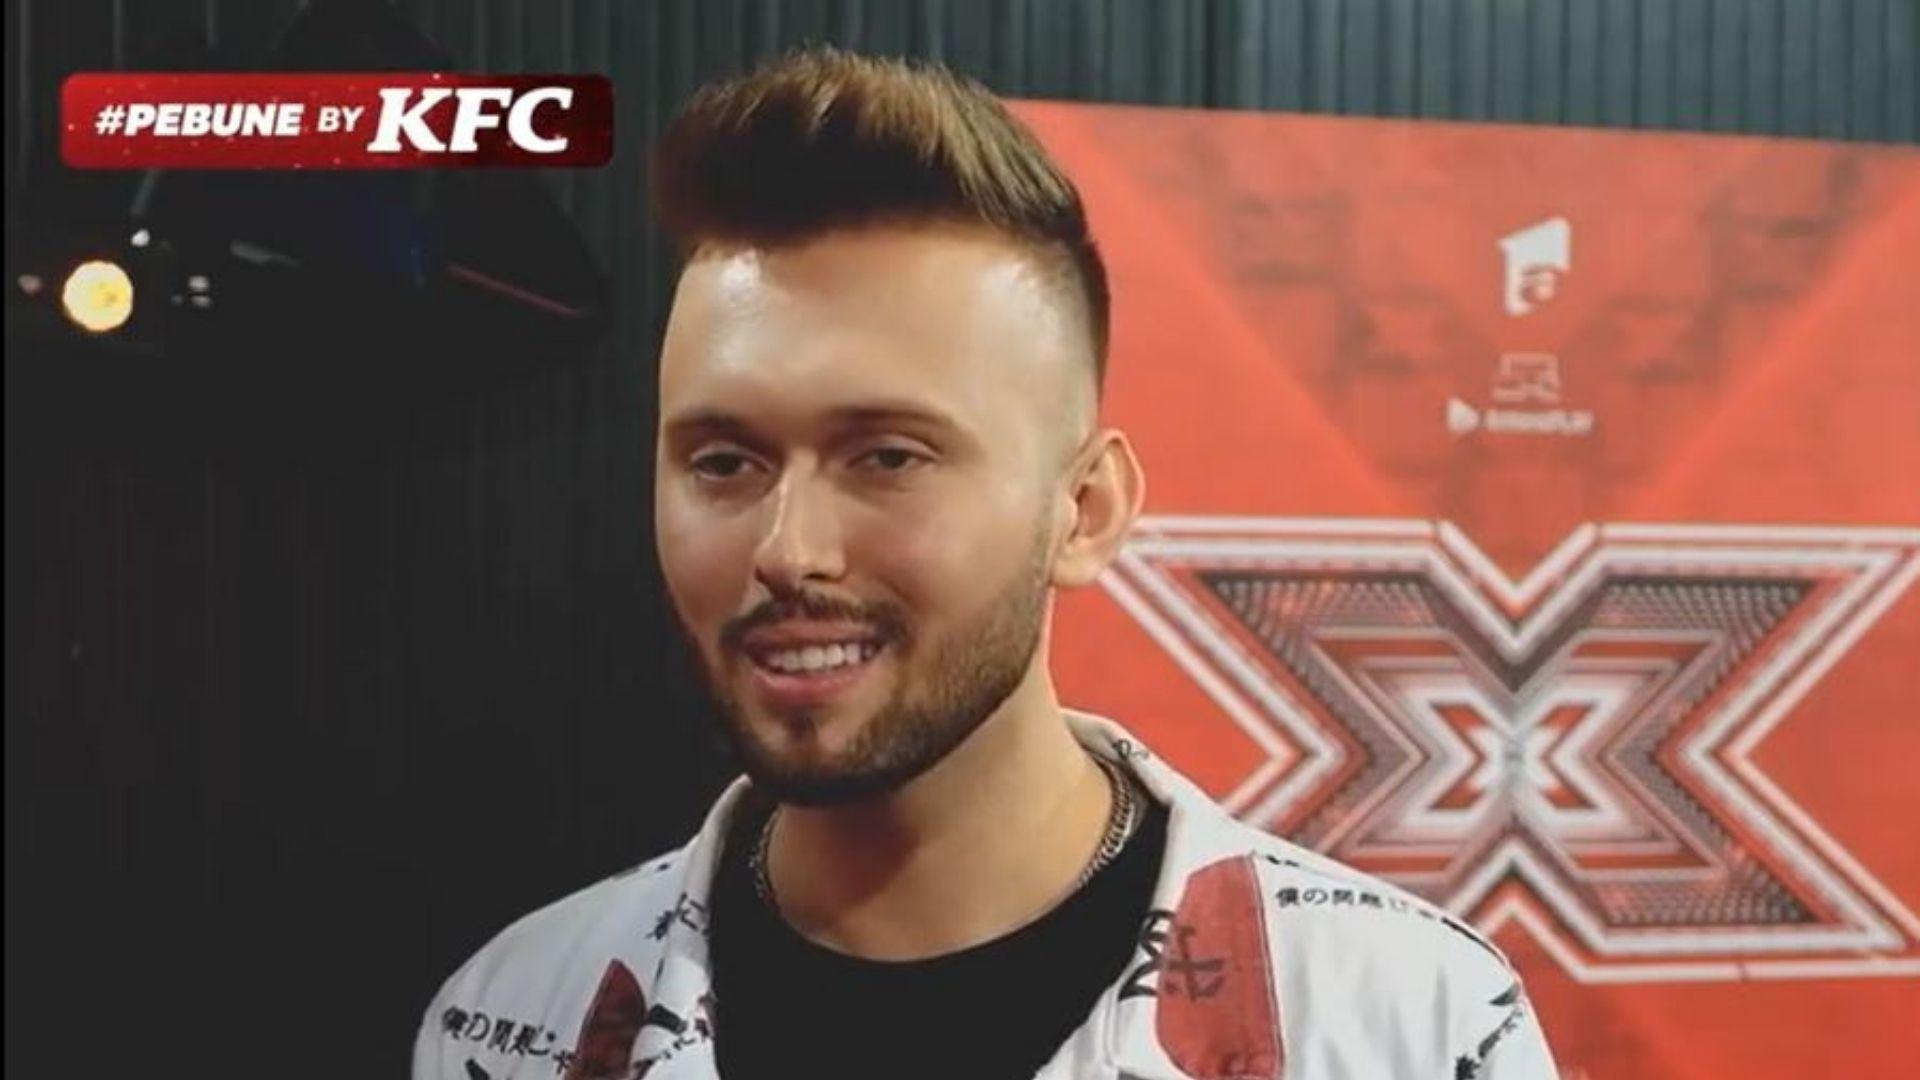 Szymon Grzybacz a răspuns provocării #pebune făcute de KFC. Concurentul X Factor: „Sunt fericit să fiu pe scenă și să cânt”